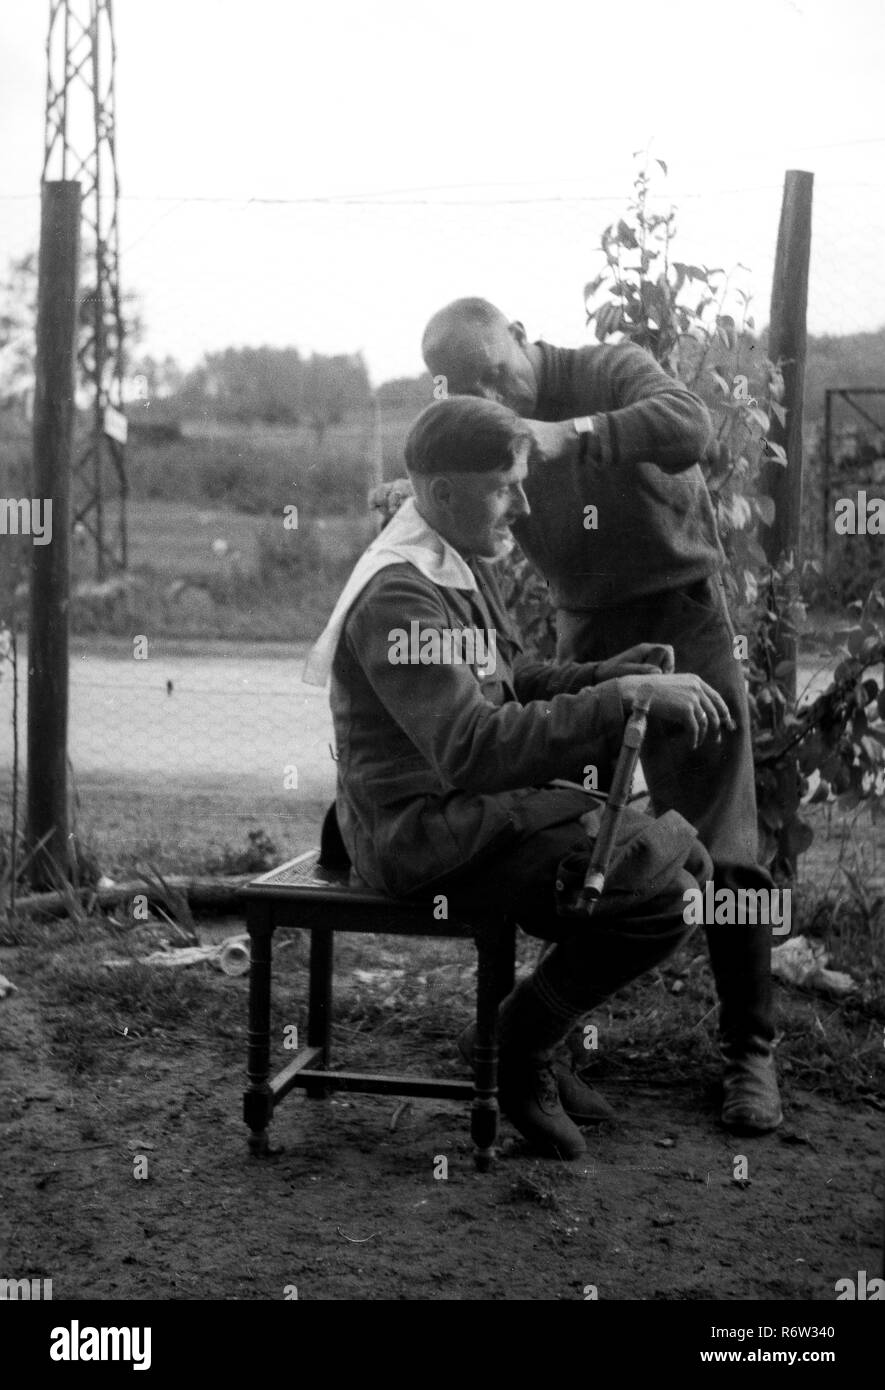 1940 soldats de l'armée allemande WW2 obtenir un style 'Hitler' couper les cheveux dans le nord de la France Banque D'Images